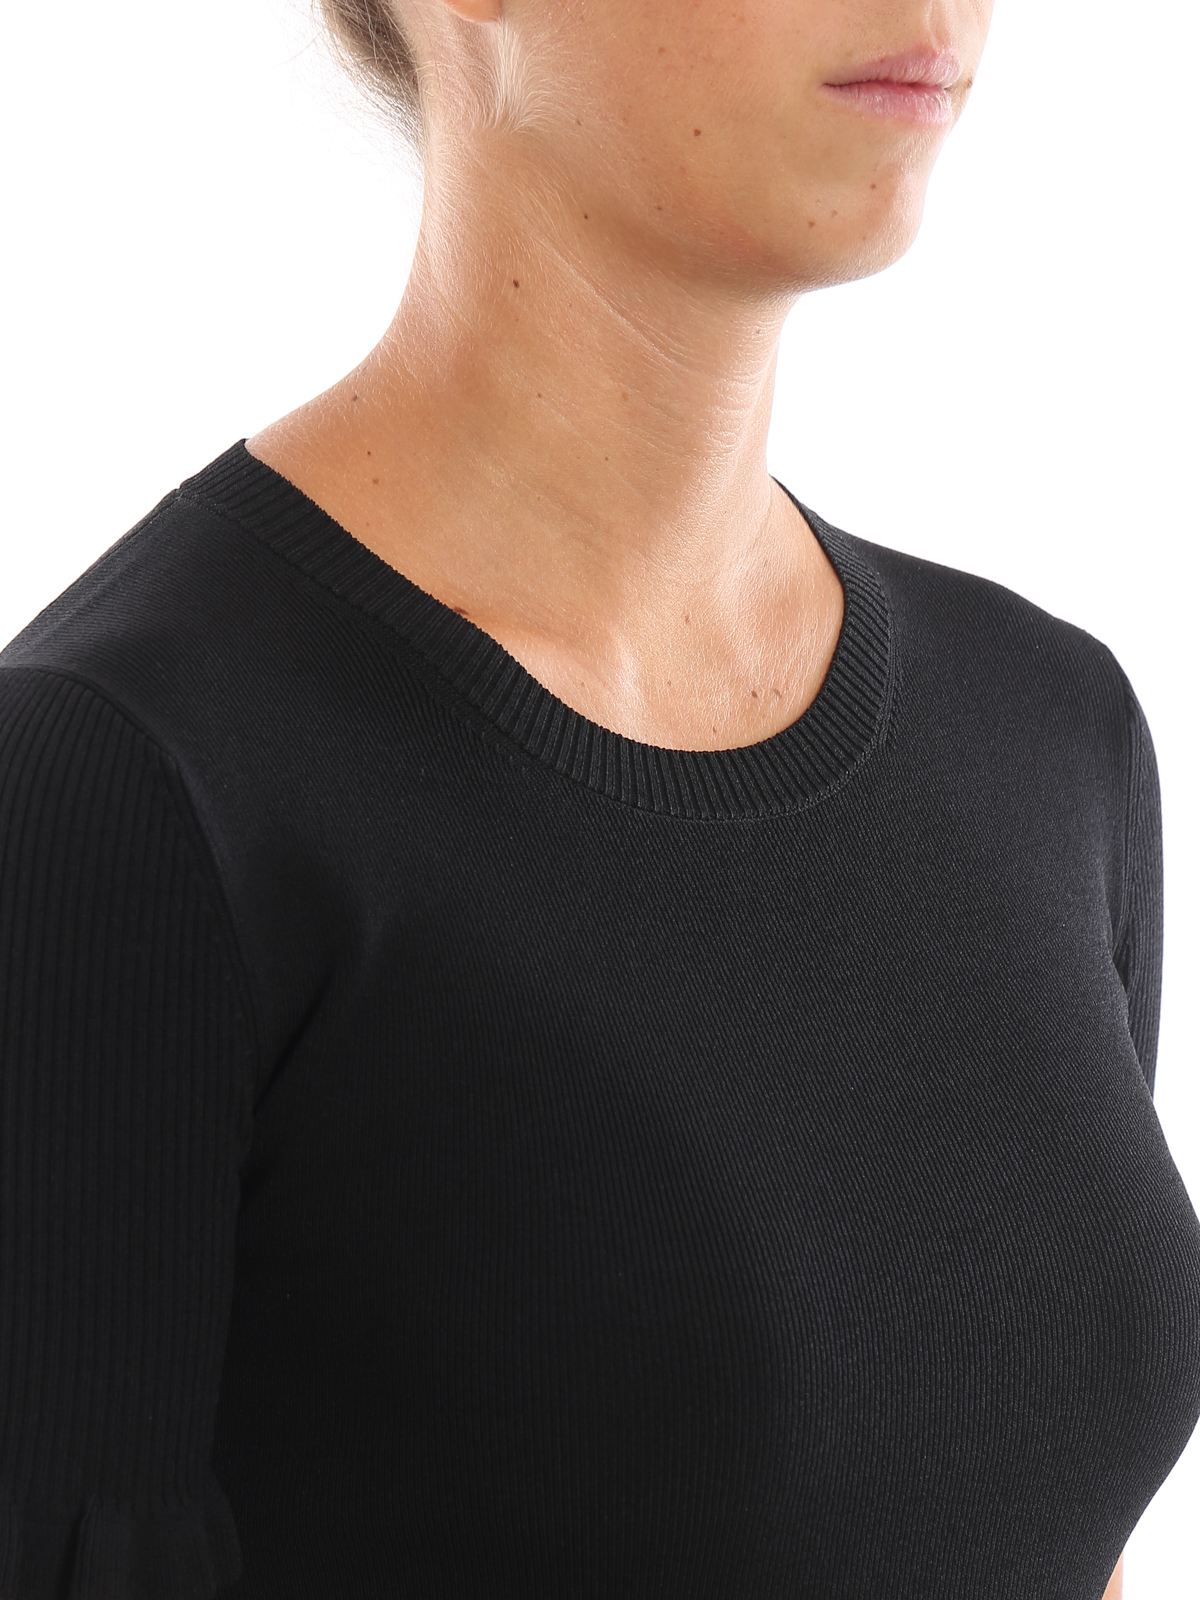 T-shirts Michael Kors - Ribbed sleeve black T-shirt - MU96NZL5ZV001